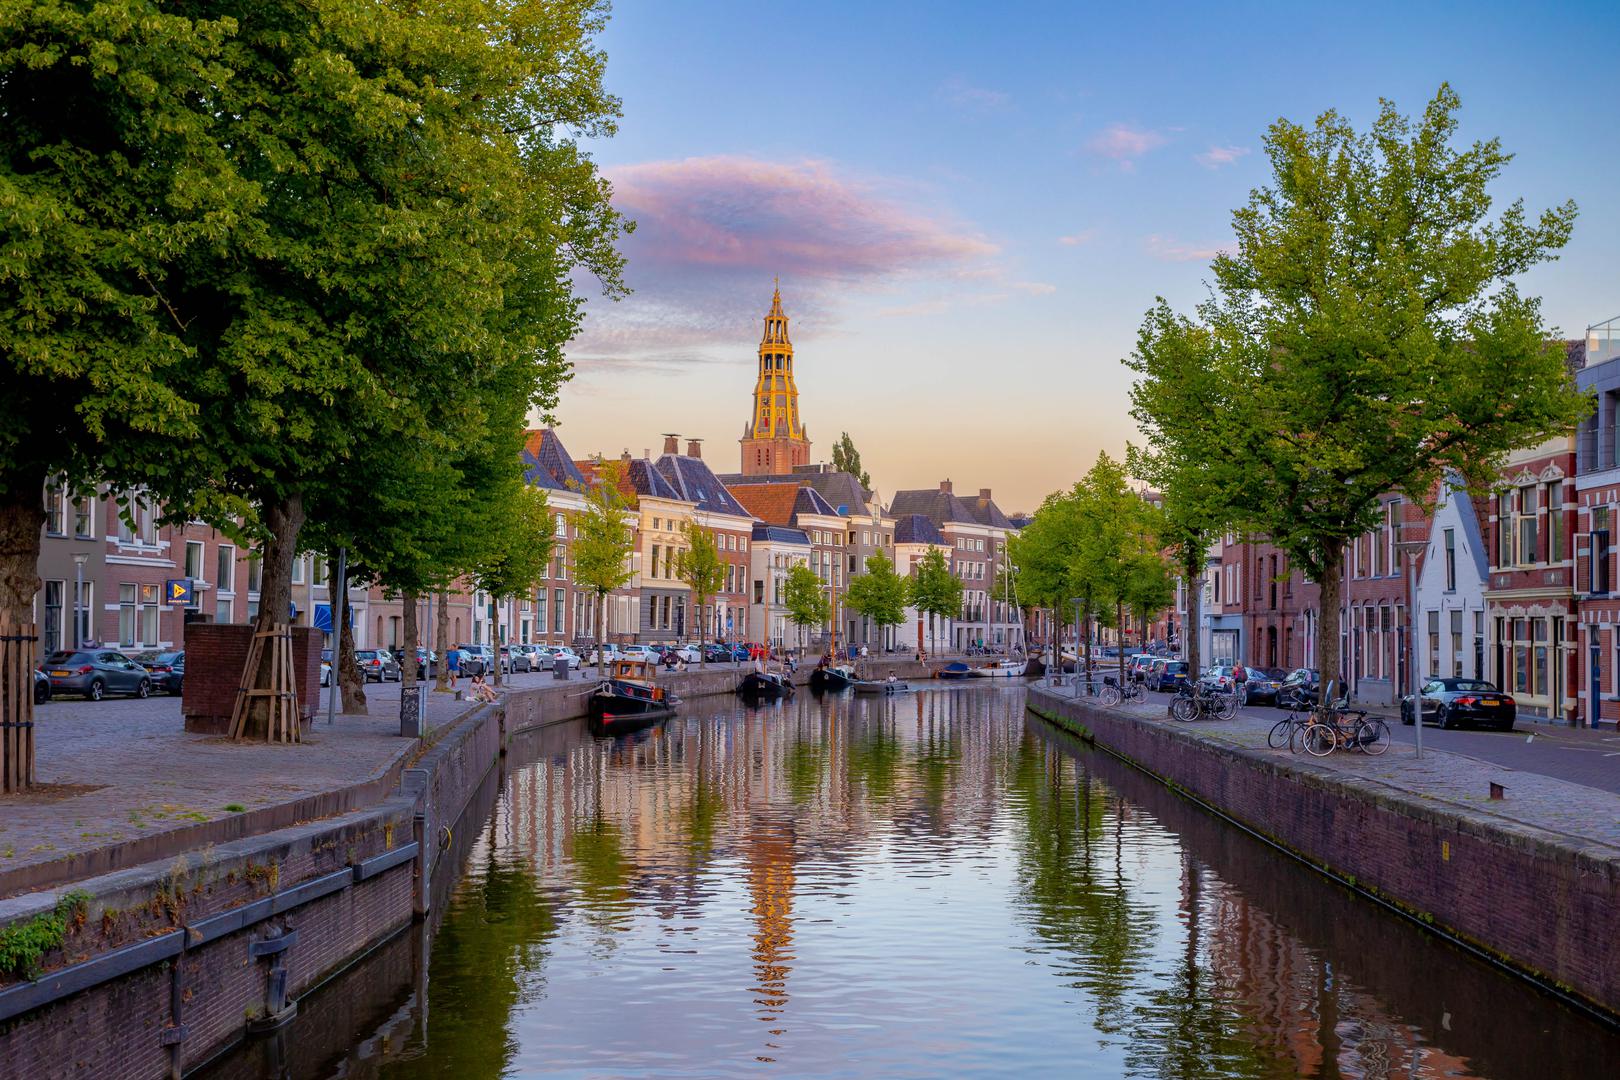 Groningen, Nizozemska: Groningen u Nizozemskoj nalazi se na sjeveru zemlje. To je sve što biste zamislili kada vam netko kaže da pomislite na nizozemski grad, zajedno s kanalima i biciklističkim stazama i tradicionalnom arhitekturom. Za lokalno stanovništvo, Groningen, za koji je istraživanje pokazalo da je 96 posto ljudi zadovoljno životom ovdje, od milja je poznat kao "Metropola sjevera" i dom je za oko 240.000 ljudi.